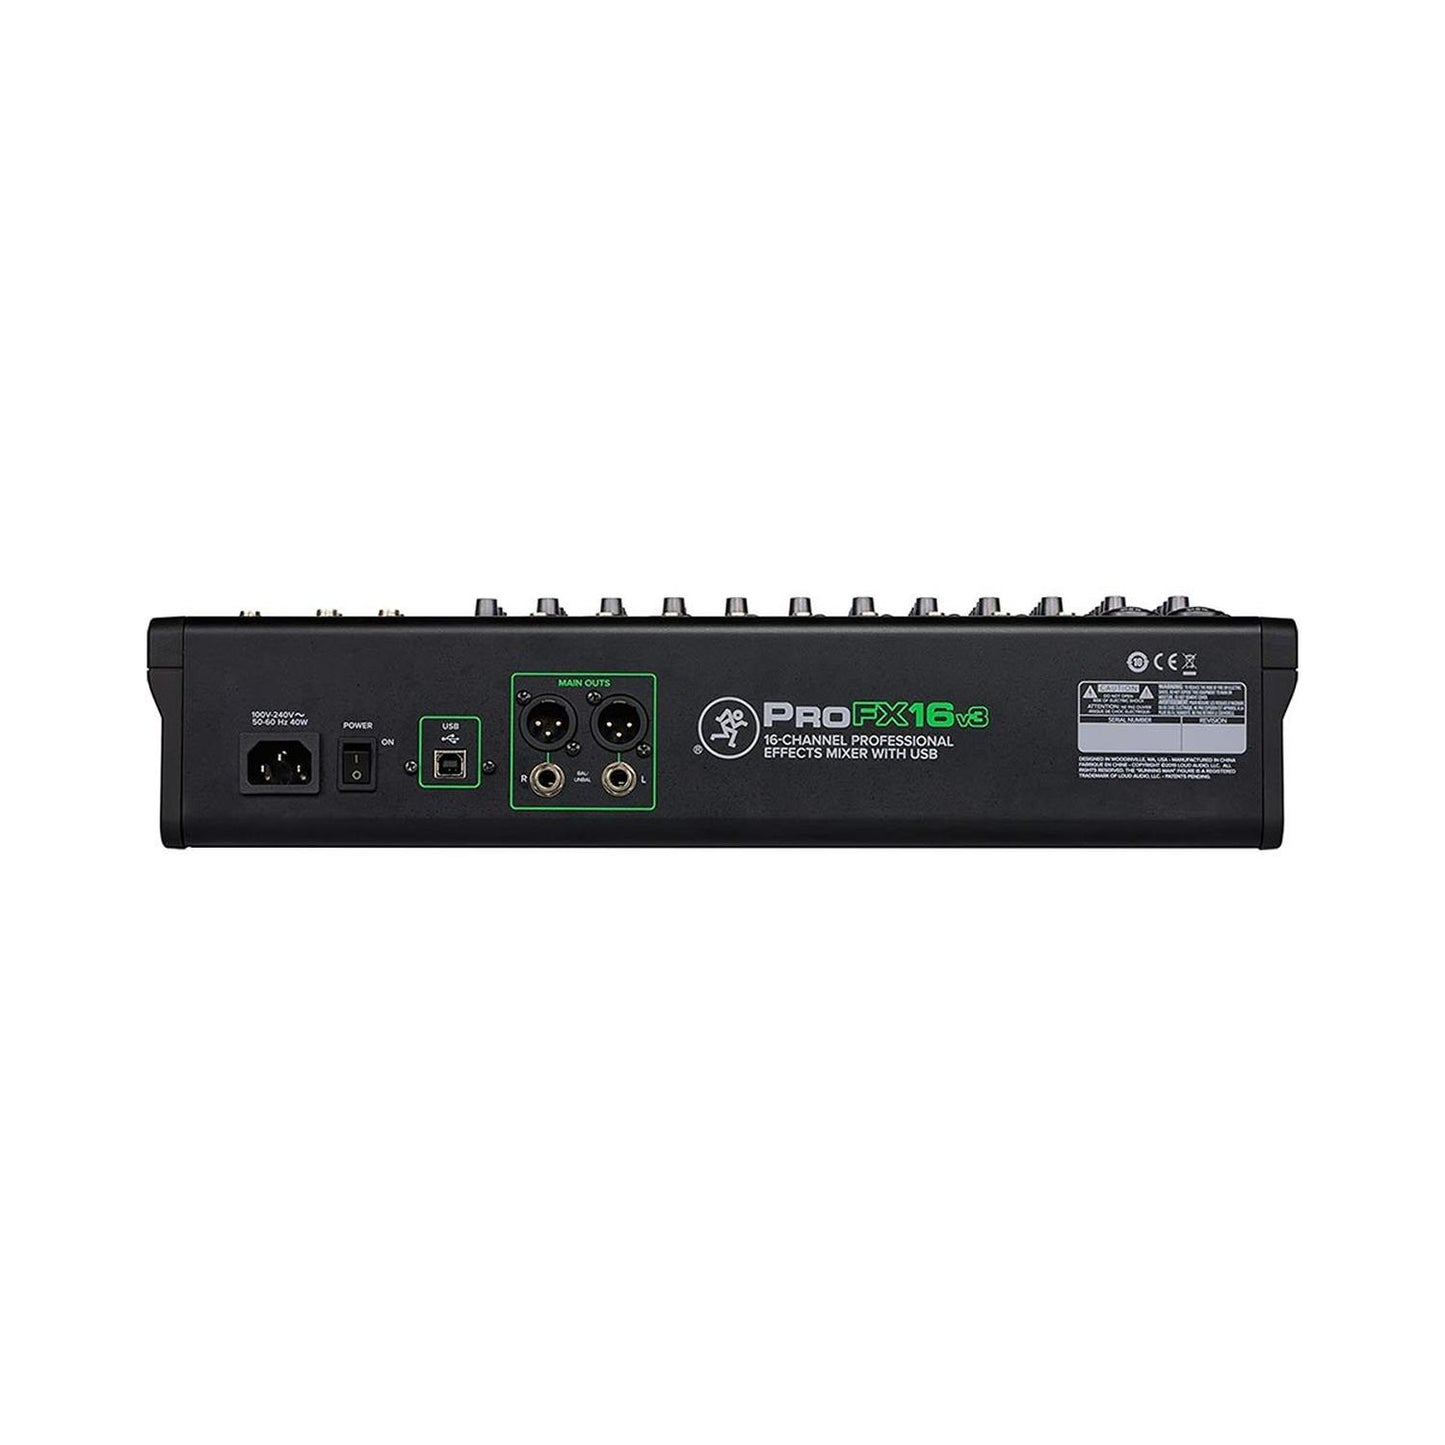 Mezcladora Análoga 16 canales con FX y USB PROFX16V3 MACKIE